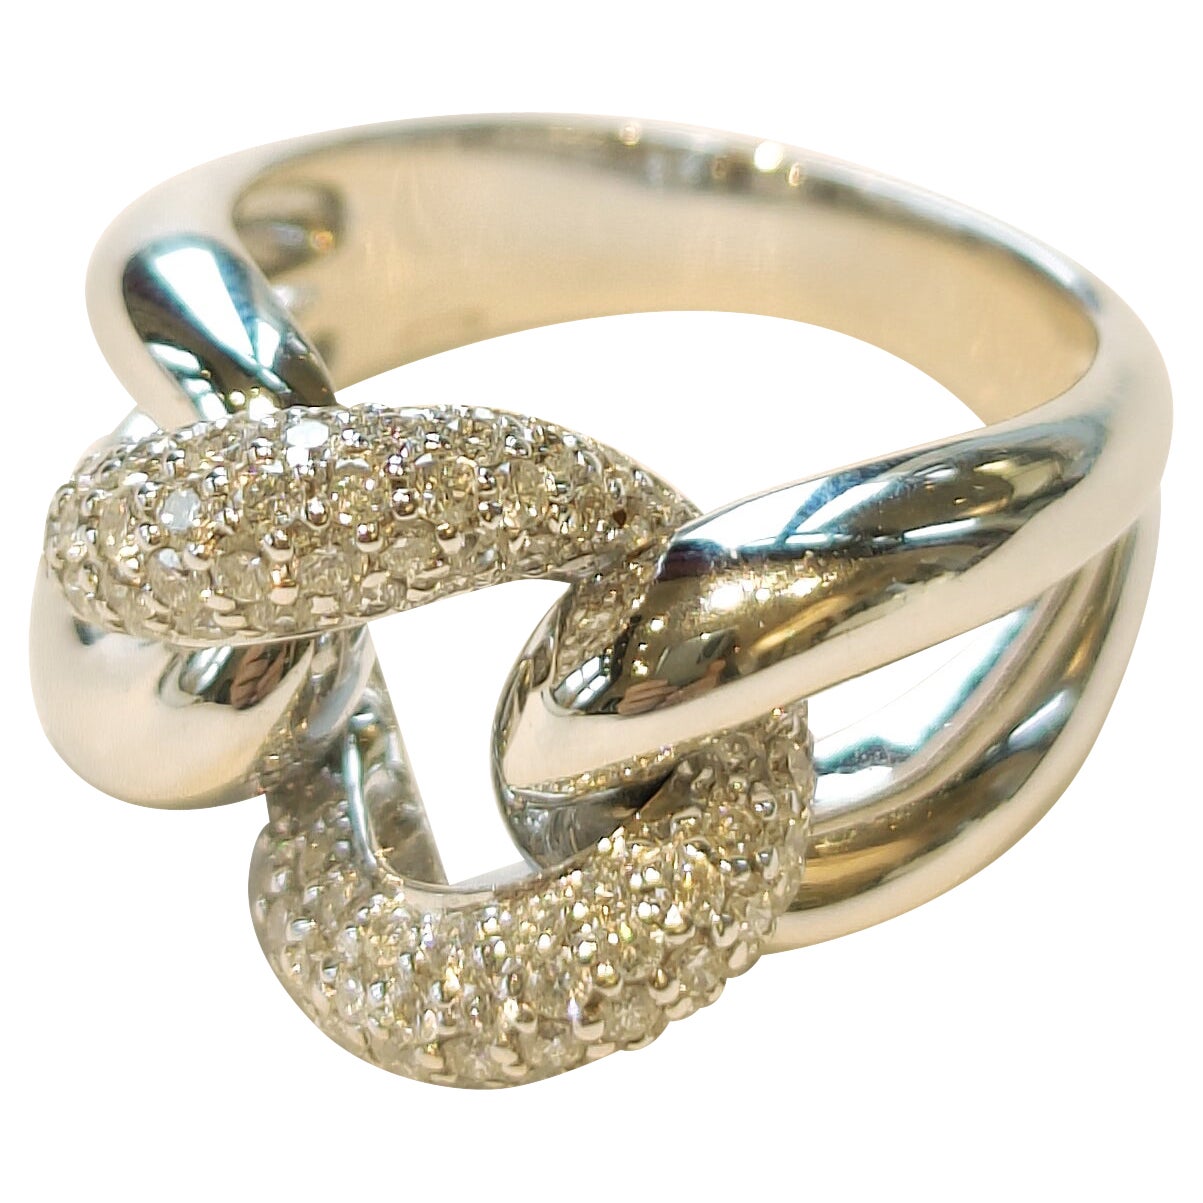 Bonebakker Chain Link Ring 18 Karat White Gold with Diamonds